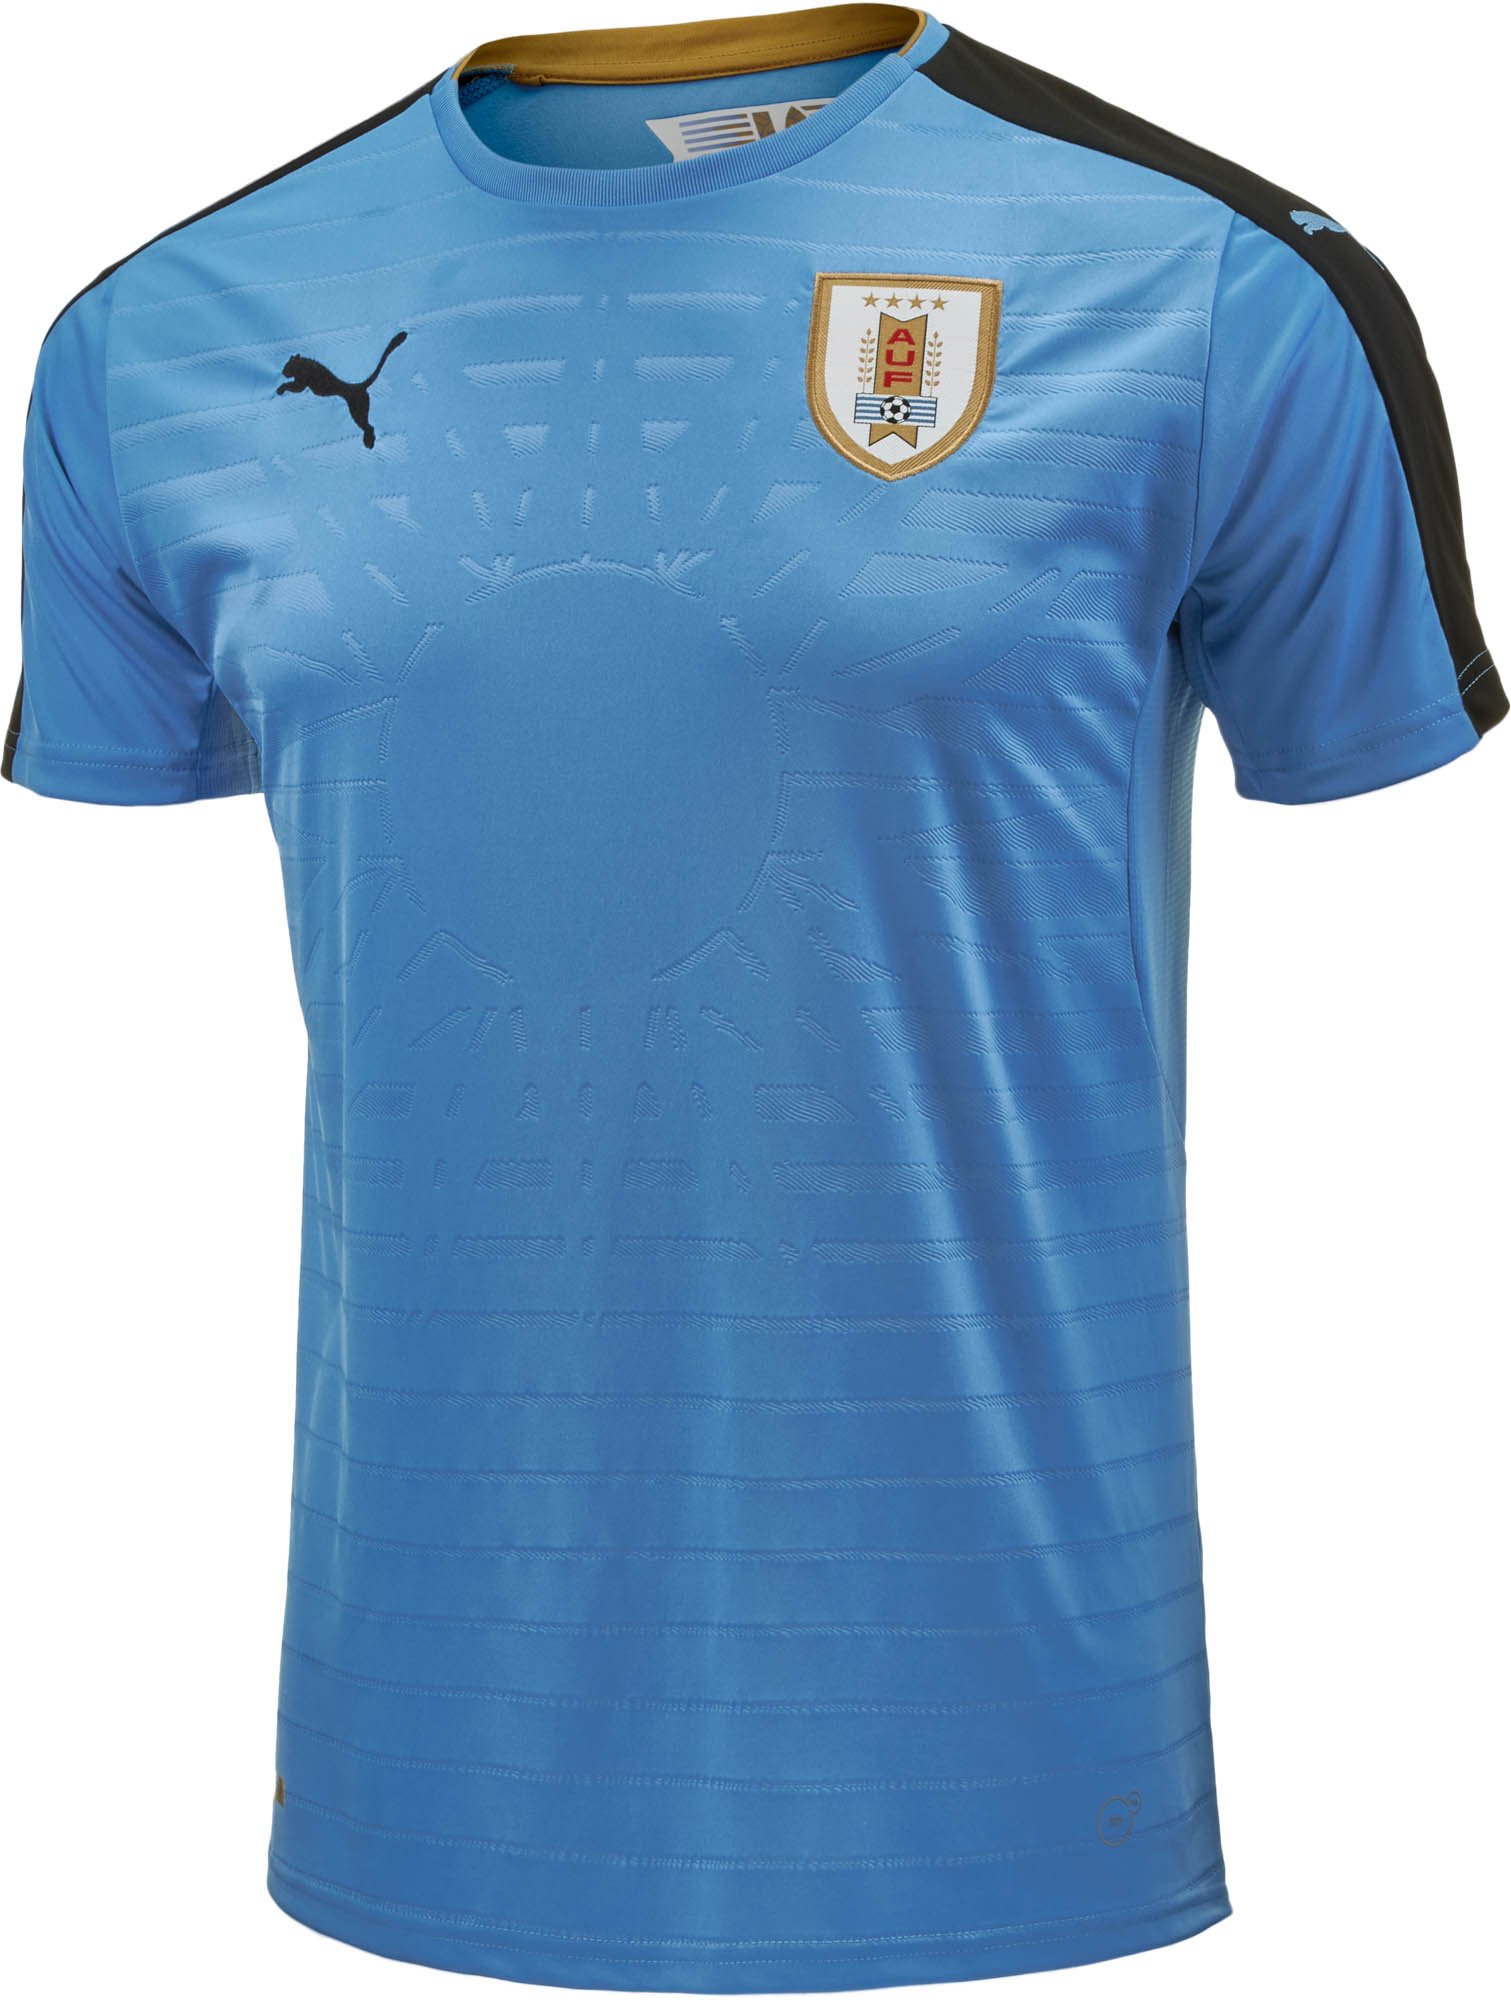 2016 Uruguay Soccer Jerseys